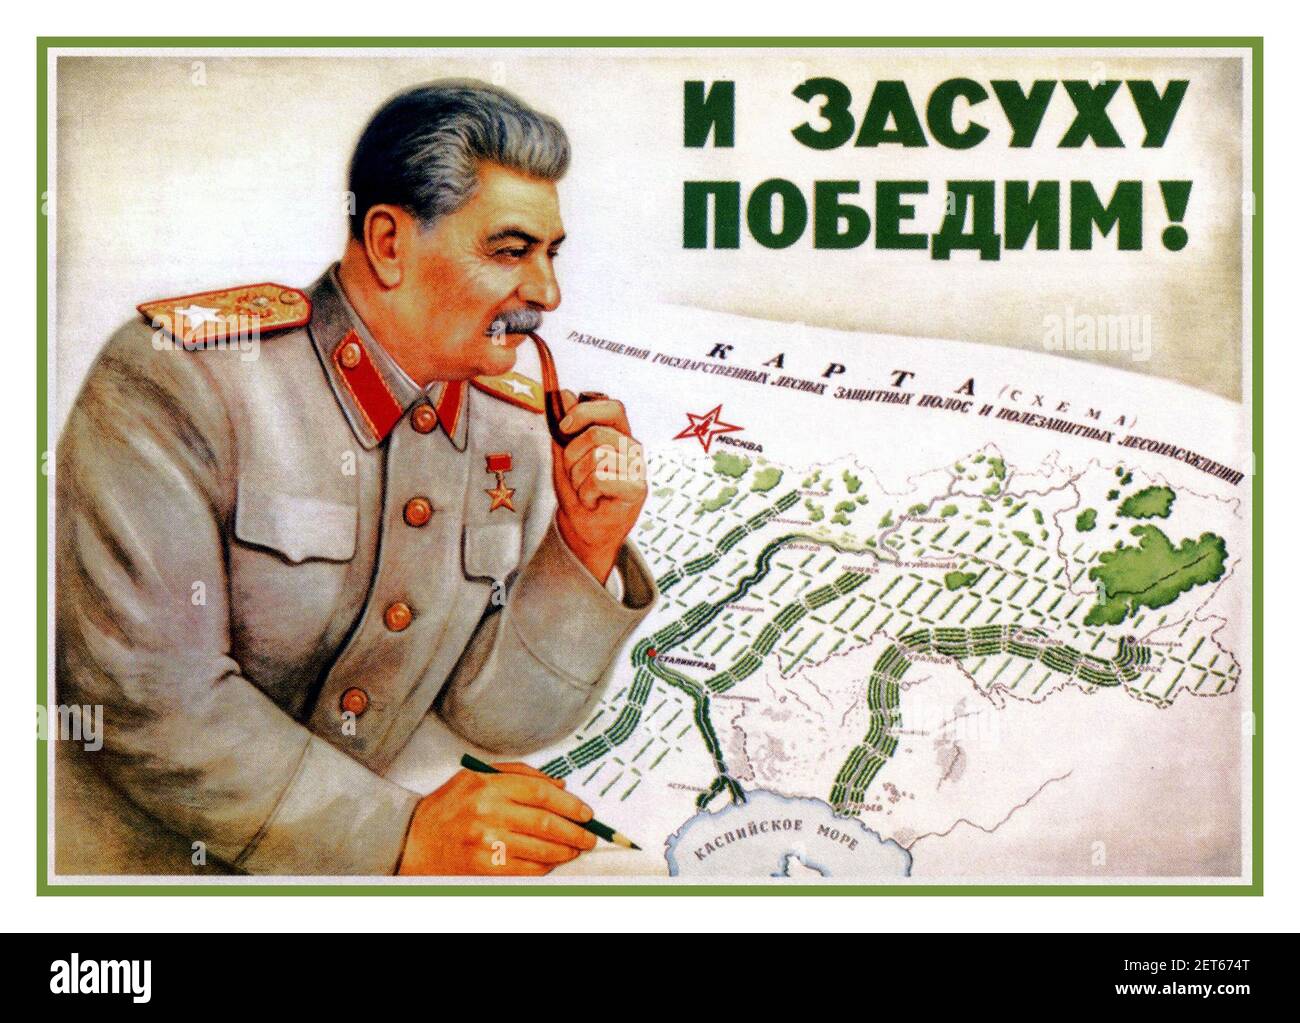 1949 Staline après la propagande de guerre affiche «nous surmonterons aussi la saison sèche!» Après la deuxième Guerre mondiale Staline 1949 regardant une carte agricole avec des points de sortie d'irrigation de terre Banque D'Images